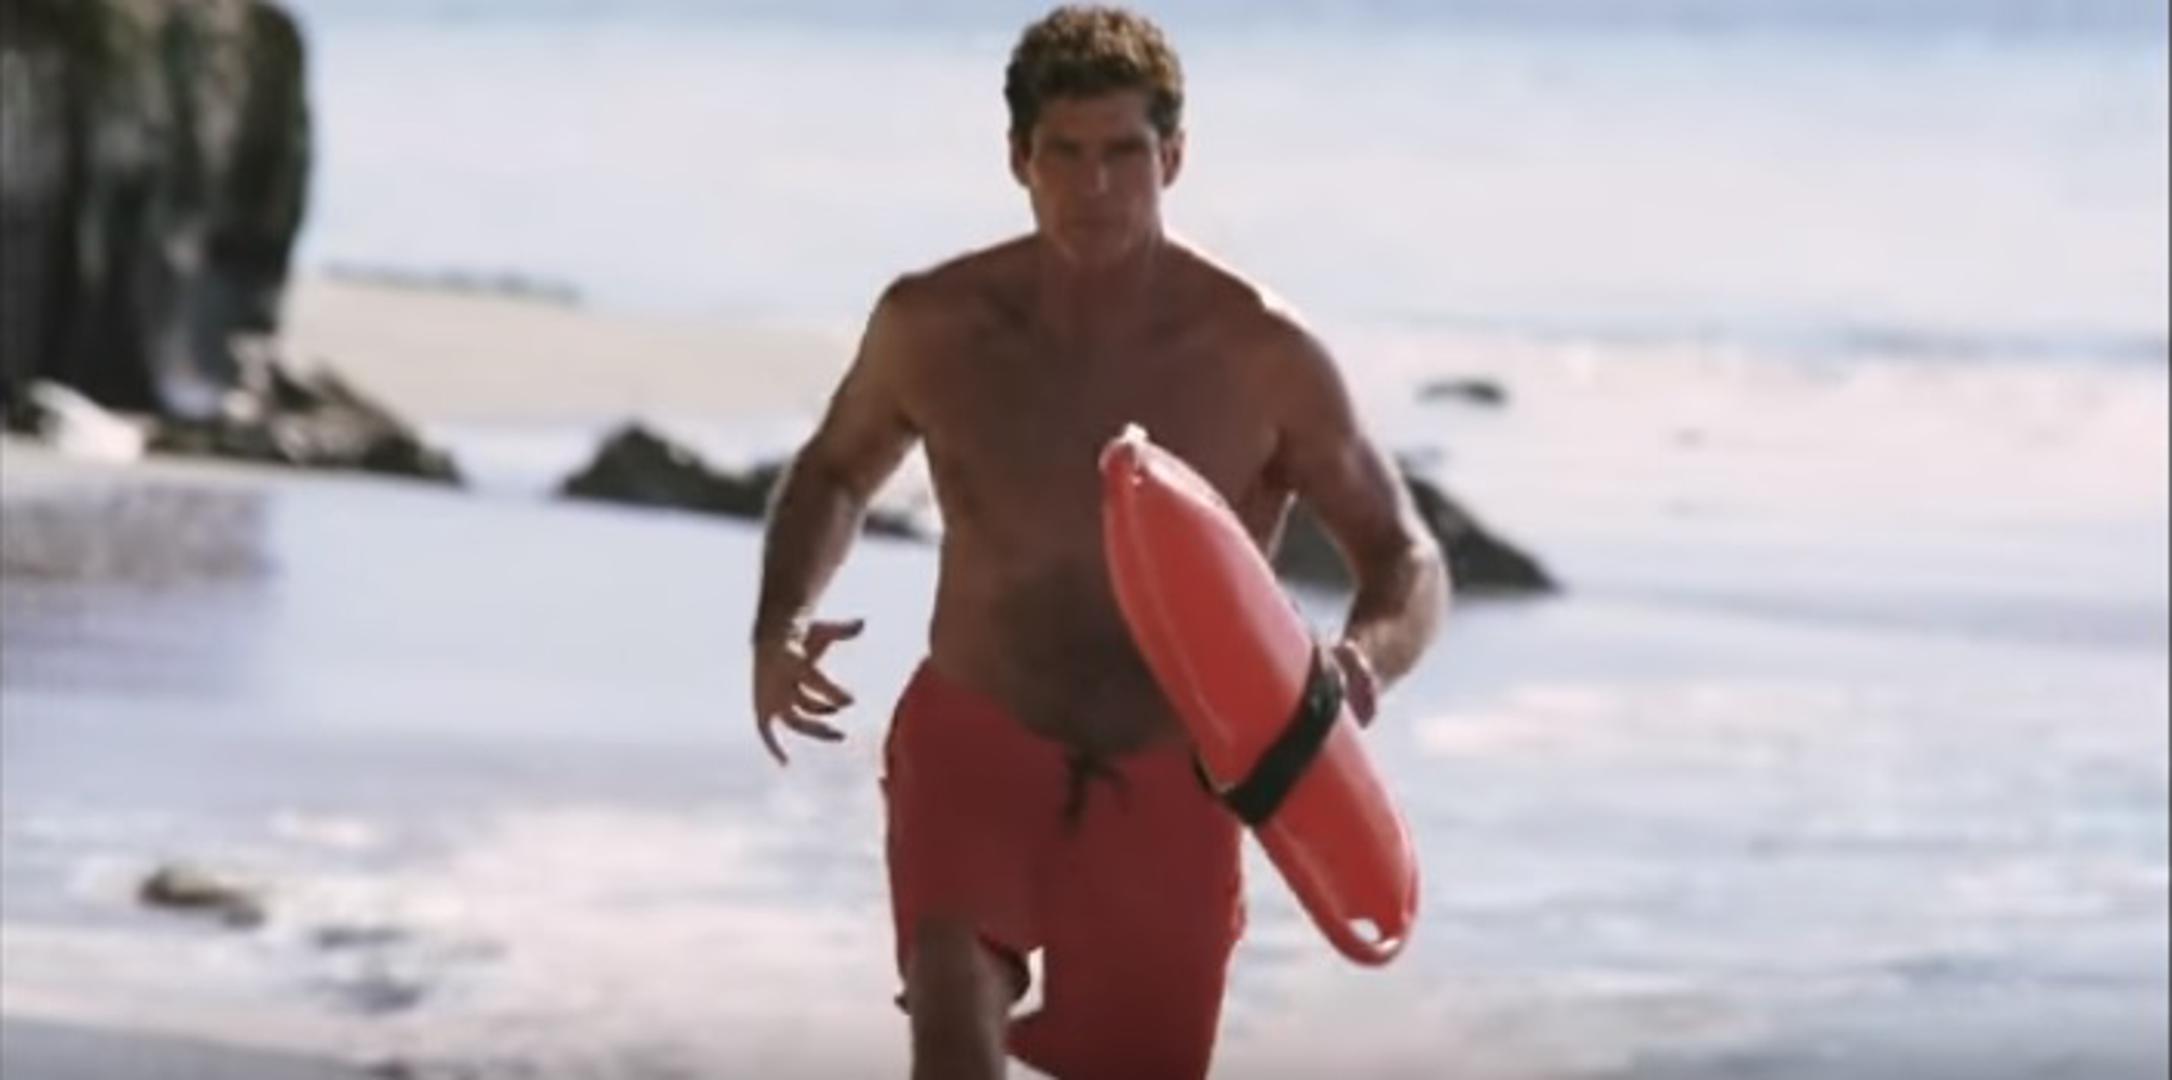 Početkom 90-ih godina David Hasselhoff bio je kralj plaže zbog serije "Spasilačka služba" u kojoj je glumio spasioca Mitcha Buchannona. 